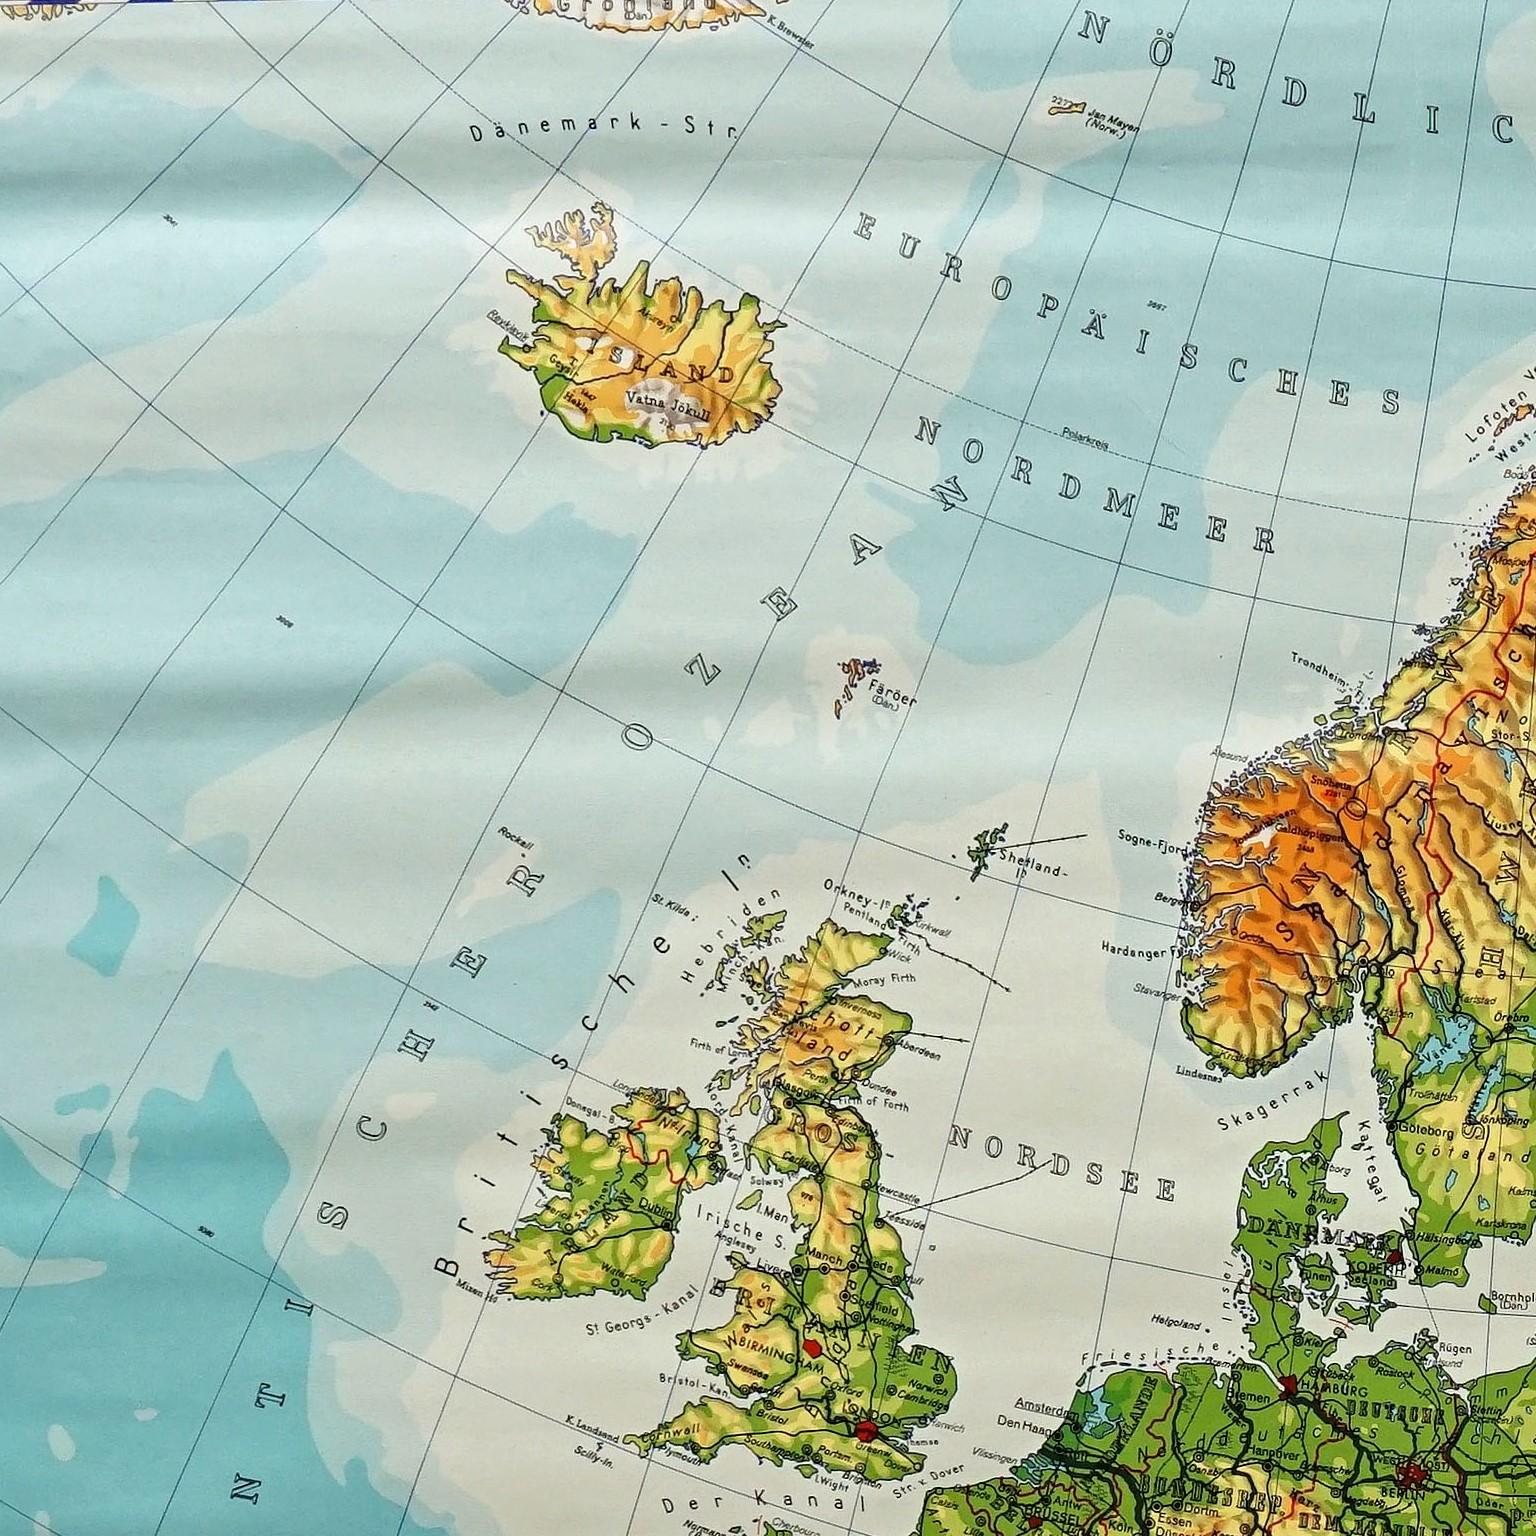 Die Vintage-Pull-Down-Karte zeigt den europäischen Kontinent / Europa. Herausgegeben von Haack-Painke, Justus Perthes Darmstadt. Farbenfroher Druck auf mit Leinwand verstärktem Papier.
Abmessungen:
Breite 104 cm (40,95 Zoll)
Höhe 97 cm (38,19